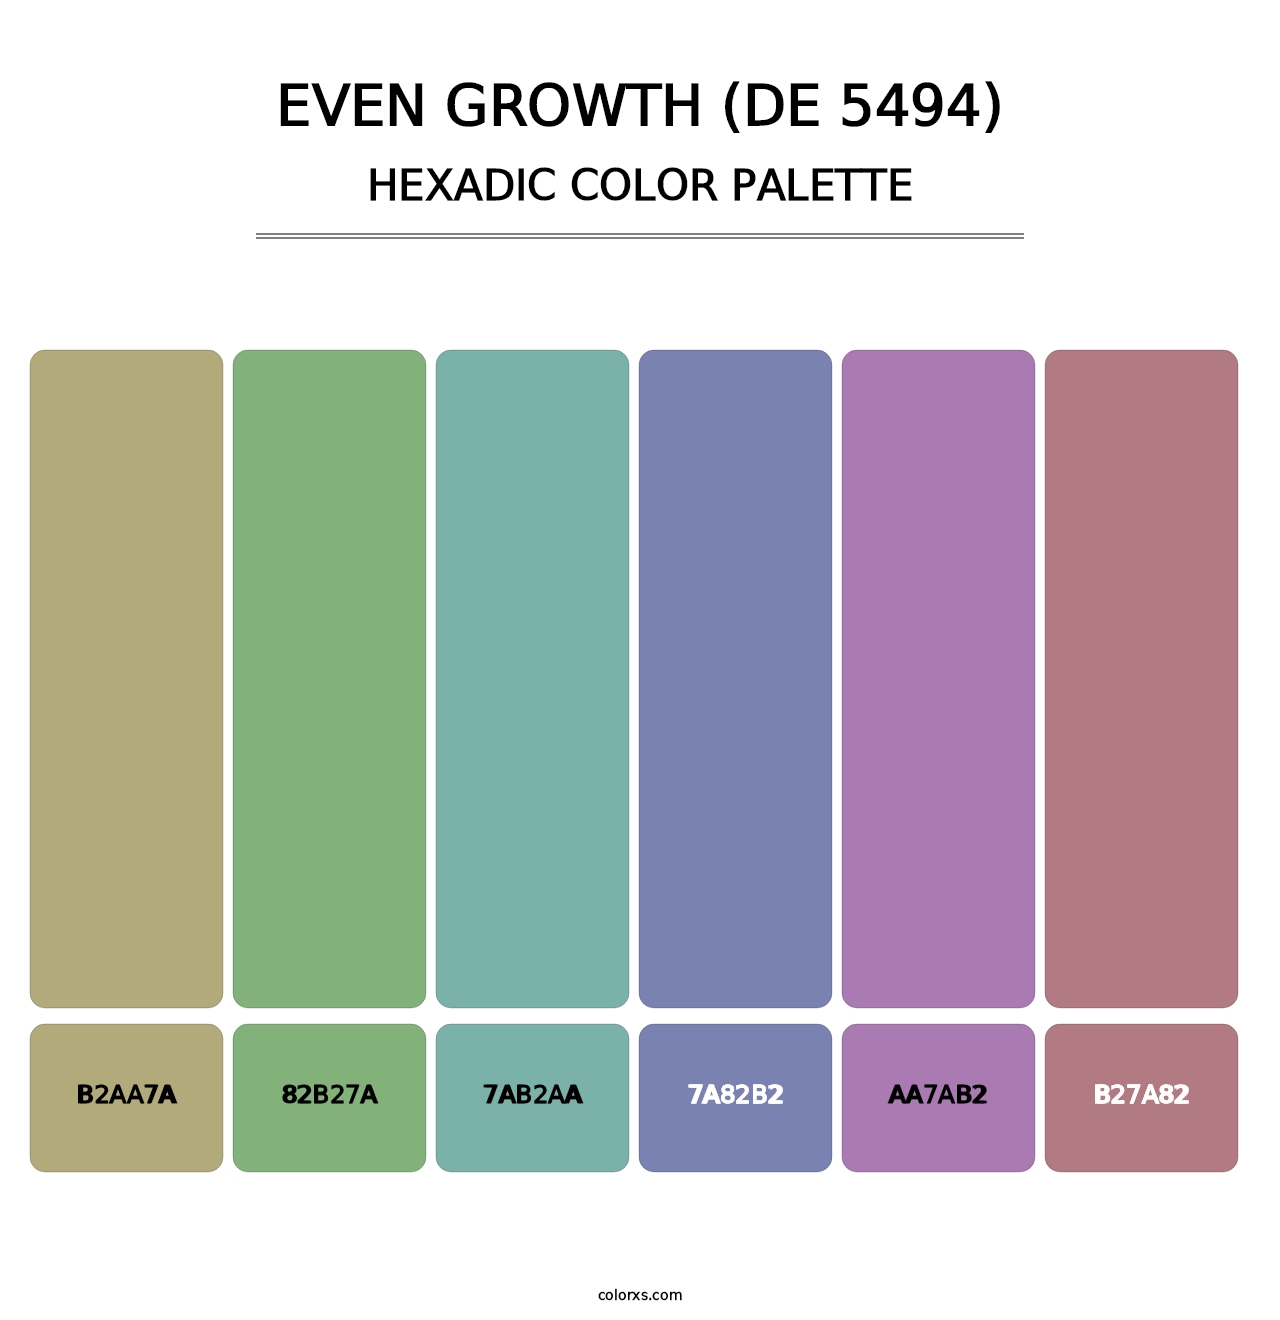 Even Growth (DE 5494) - Hexadic Color Palette